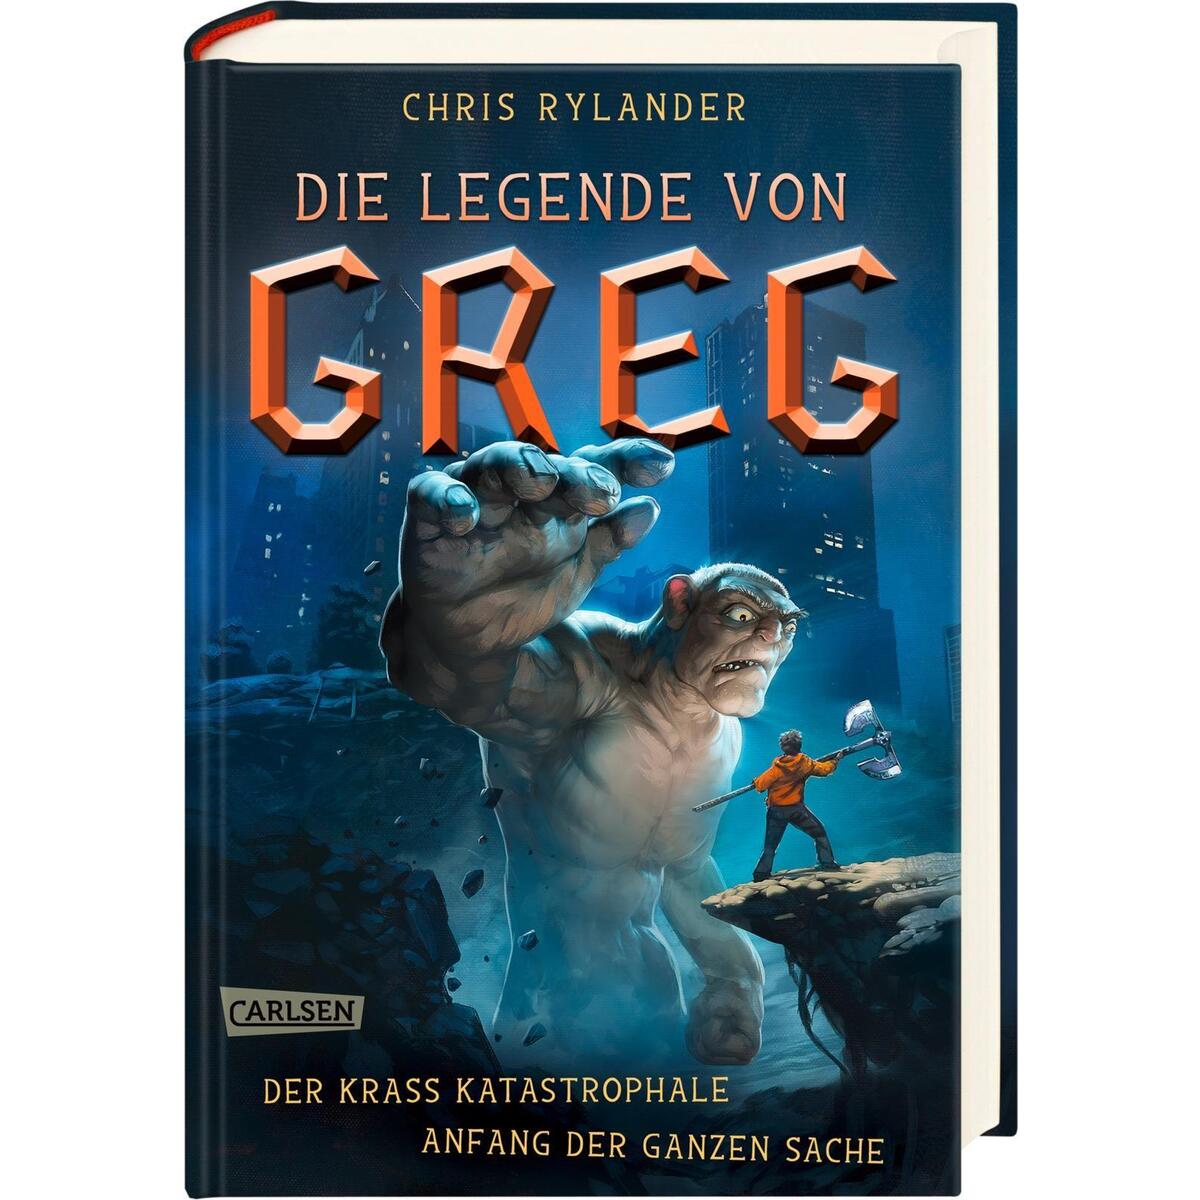 Die Legende von Greg 1: Der krass katastrophale Anfang der ganzen Sache von Carlsen Verlag GmbH